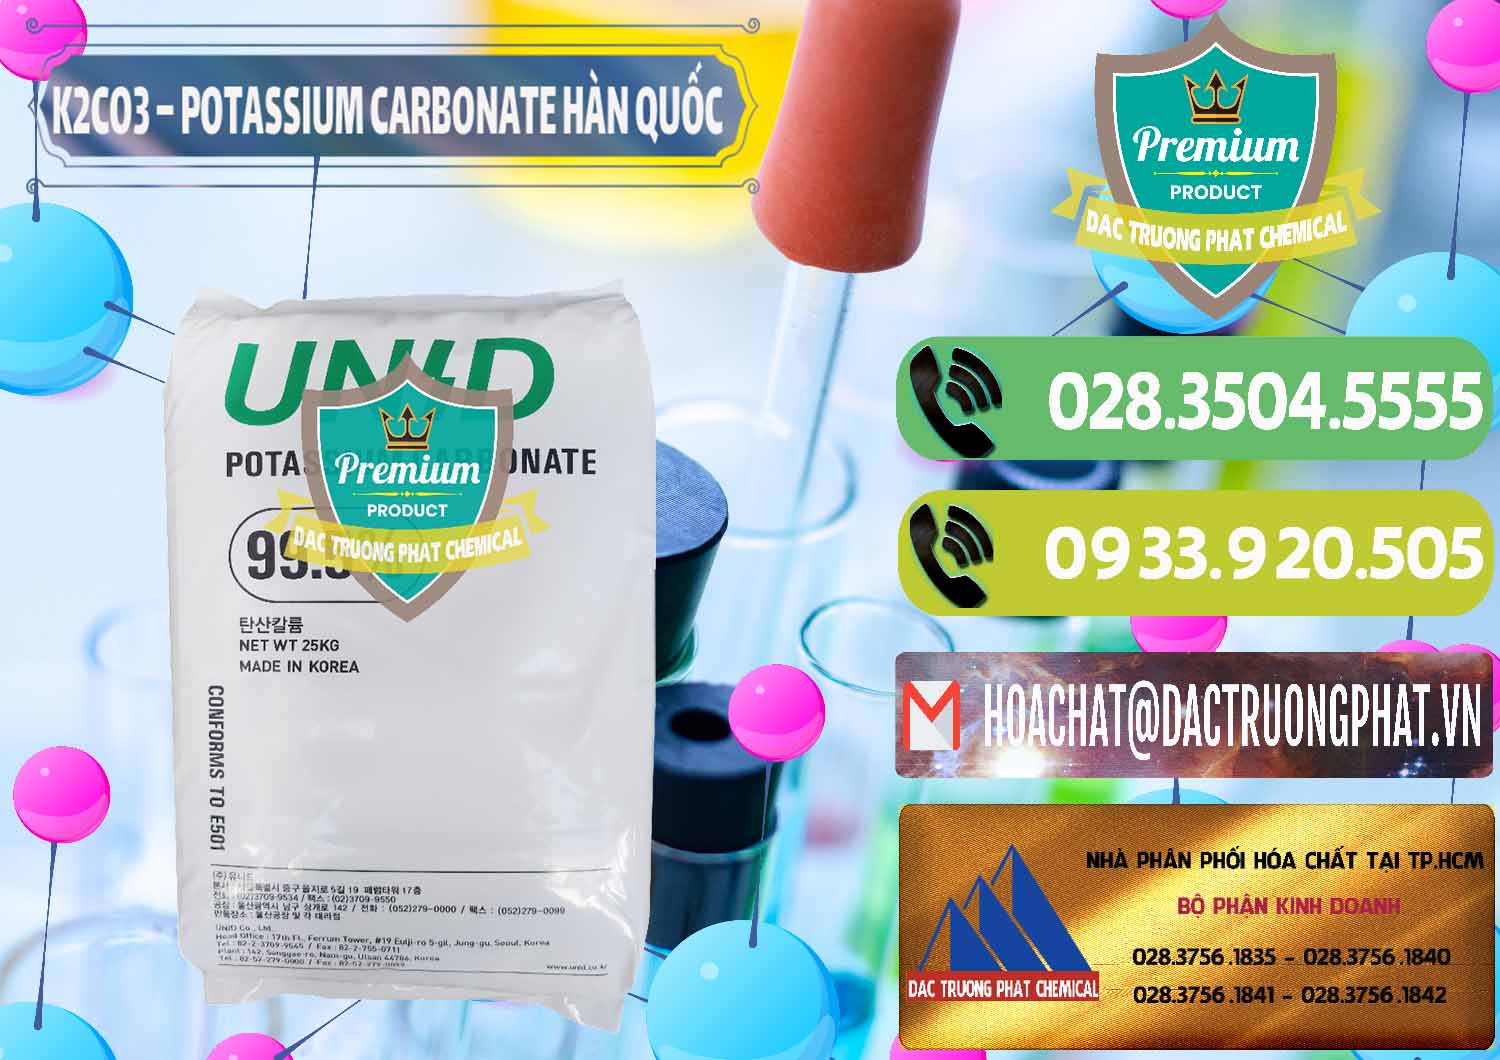 Công ty chuyên nhập khẩu & bán K2Co3 – Potassium Carbonate Unid Hàn Quốc Korea - 0081 - Cty chuyên nhập khẩu _ cung cấp hóa chất tại TP.HCM - hoachatmientay.vn